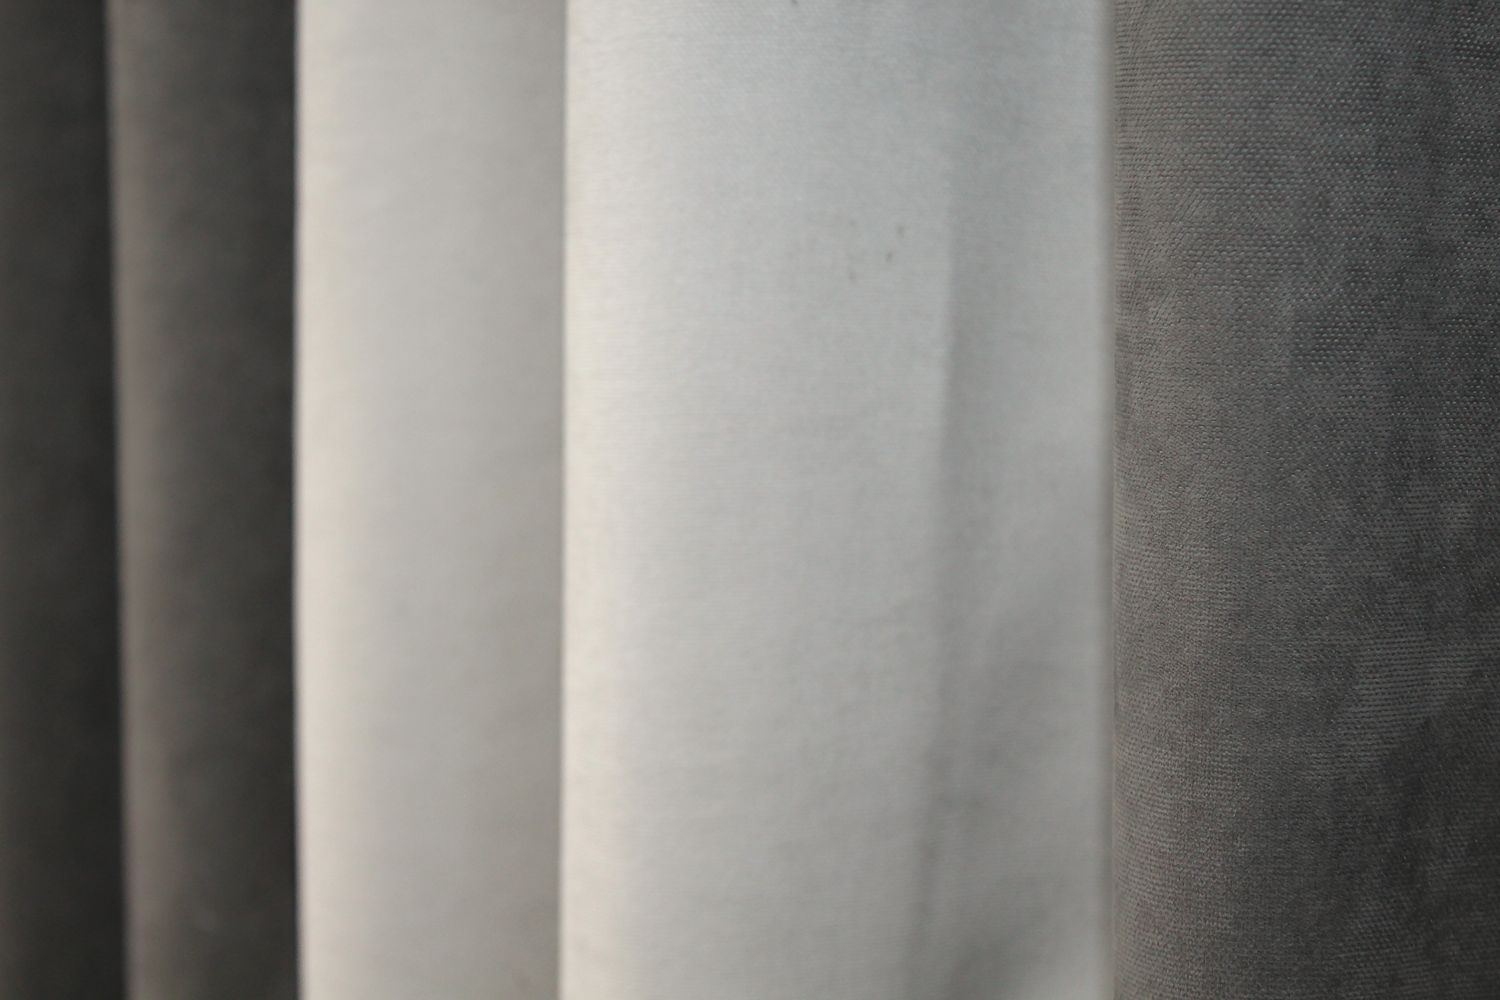 Комбинированные шторы из микровелюра цвет серый со светло-серым 016дк (839-1197-839ш), Серый с светло-серым, Комплект штор (2шт. 1,5х2,85м.), Без ламбрекена, Длинные, 1,5 м., 2,85 м., 150, 285, 2 - 3 м., В комплекте 2 шт., Тесьма